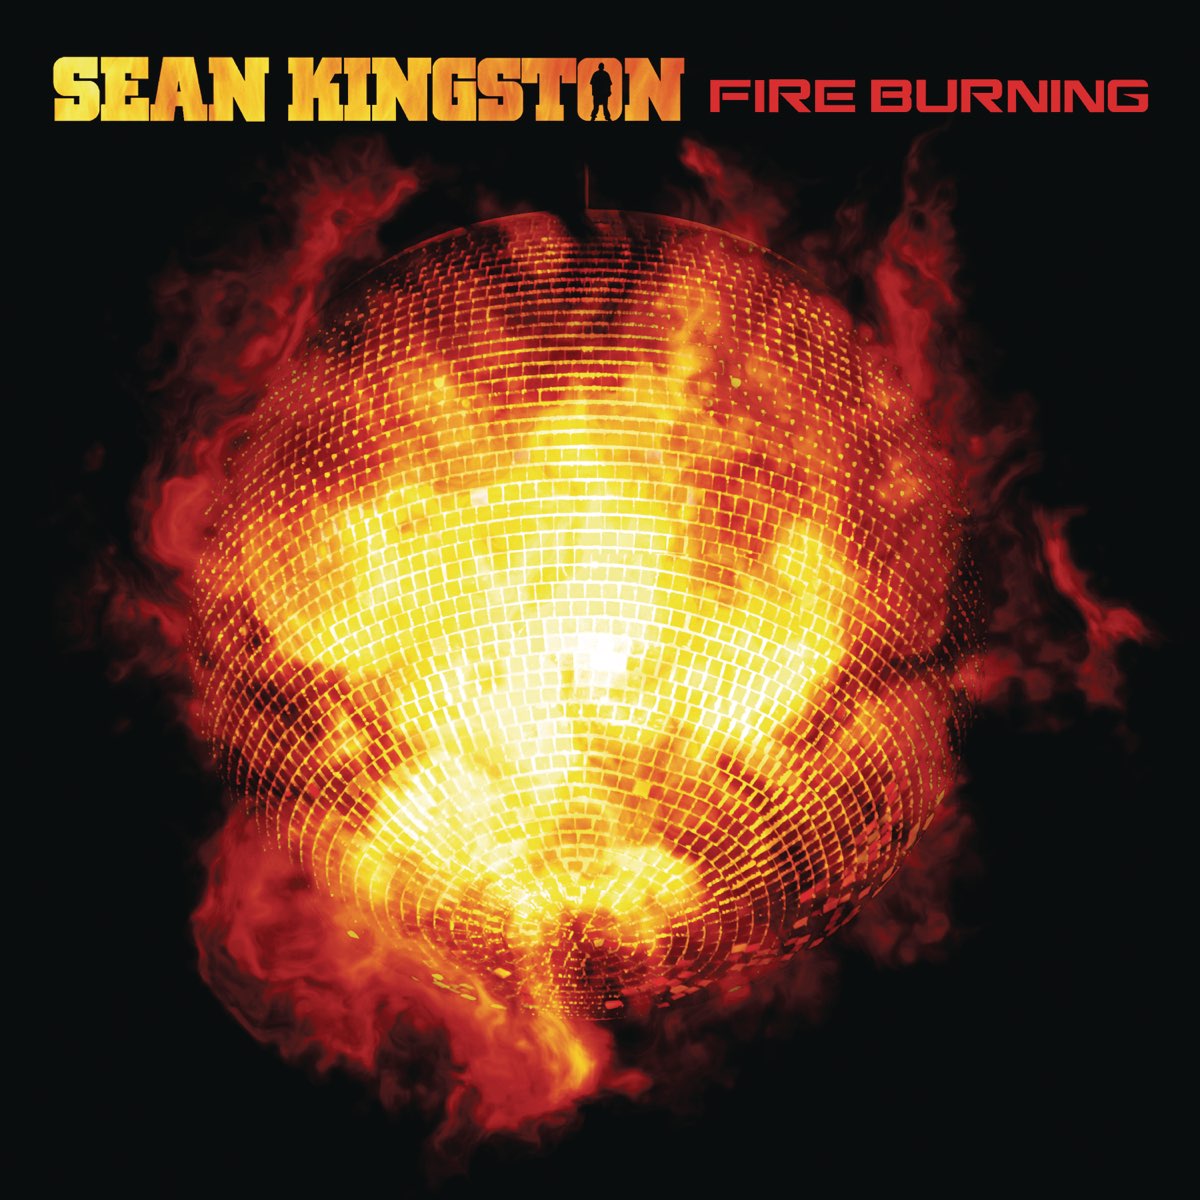 Sean Kingston Fire Burning cover artwork